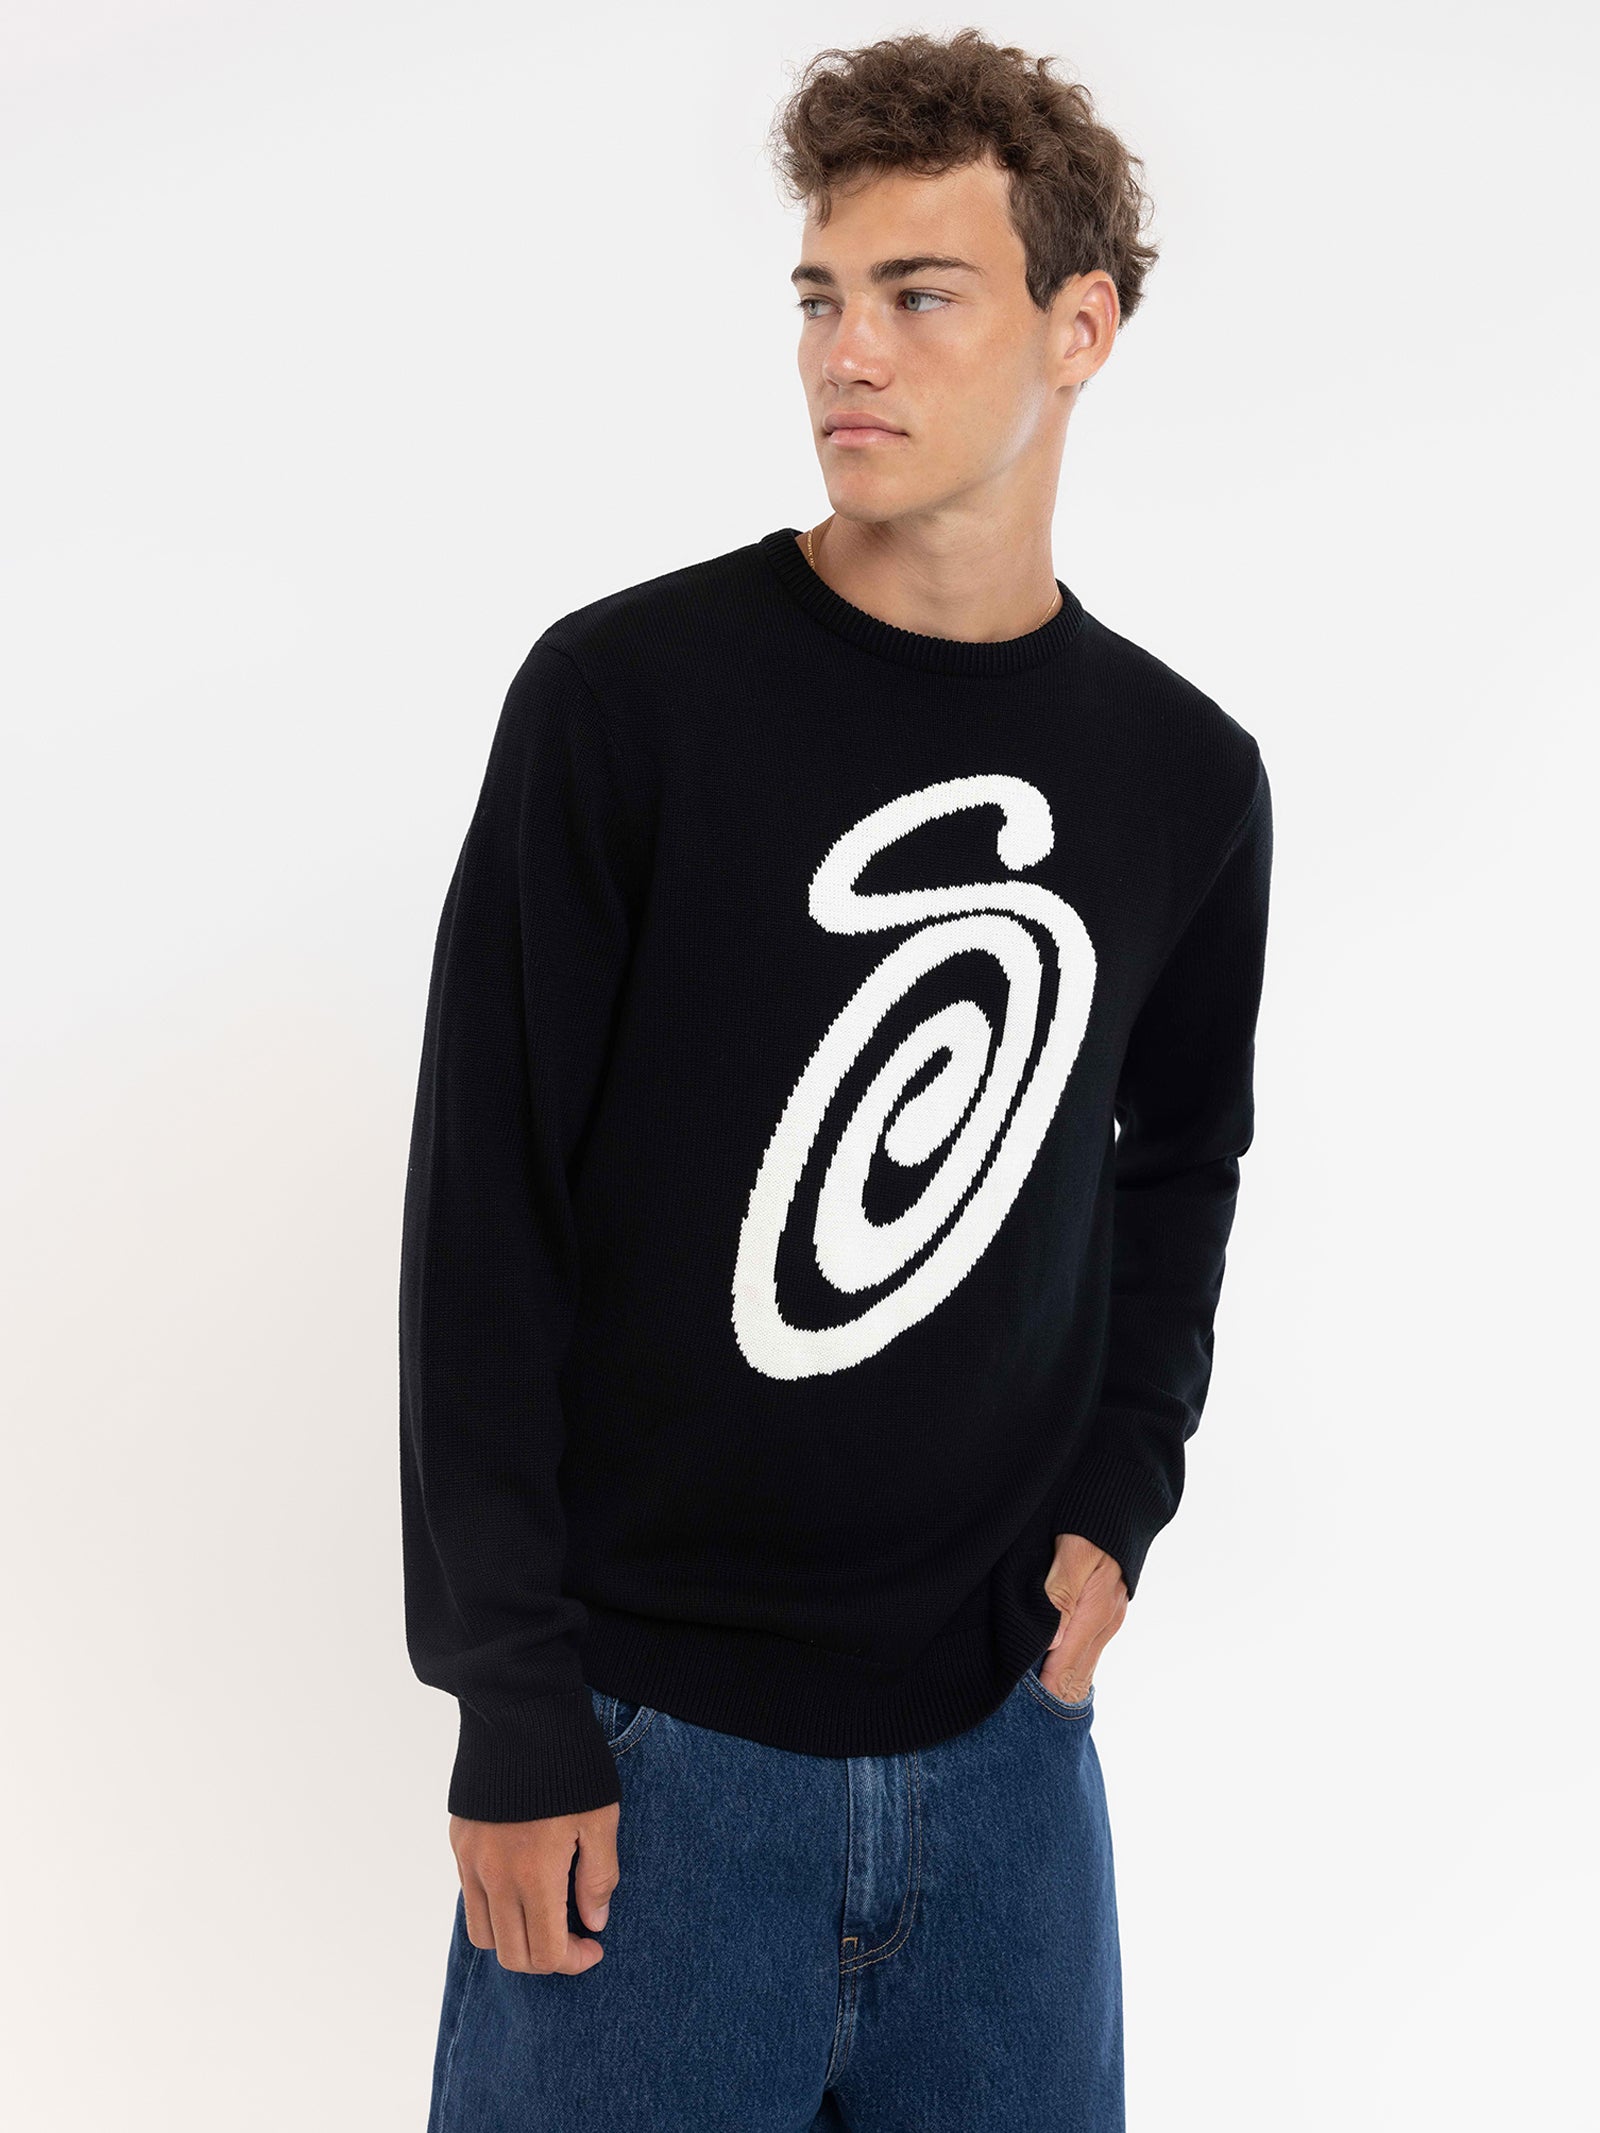 Swirly S Sweater